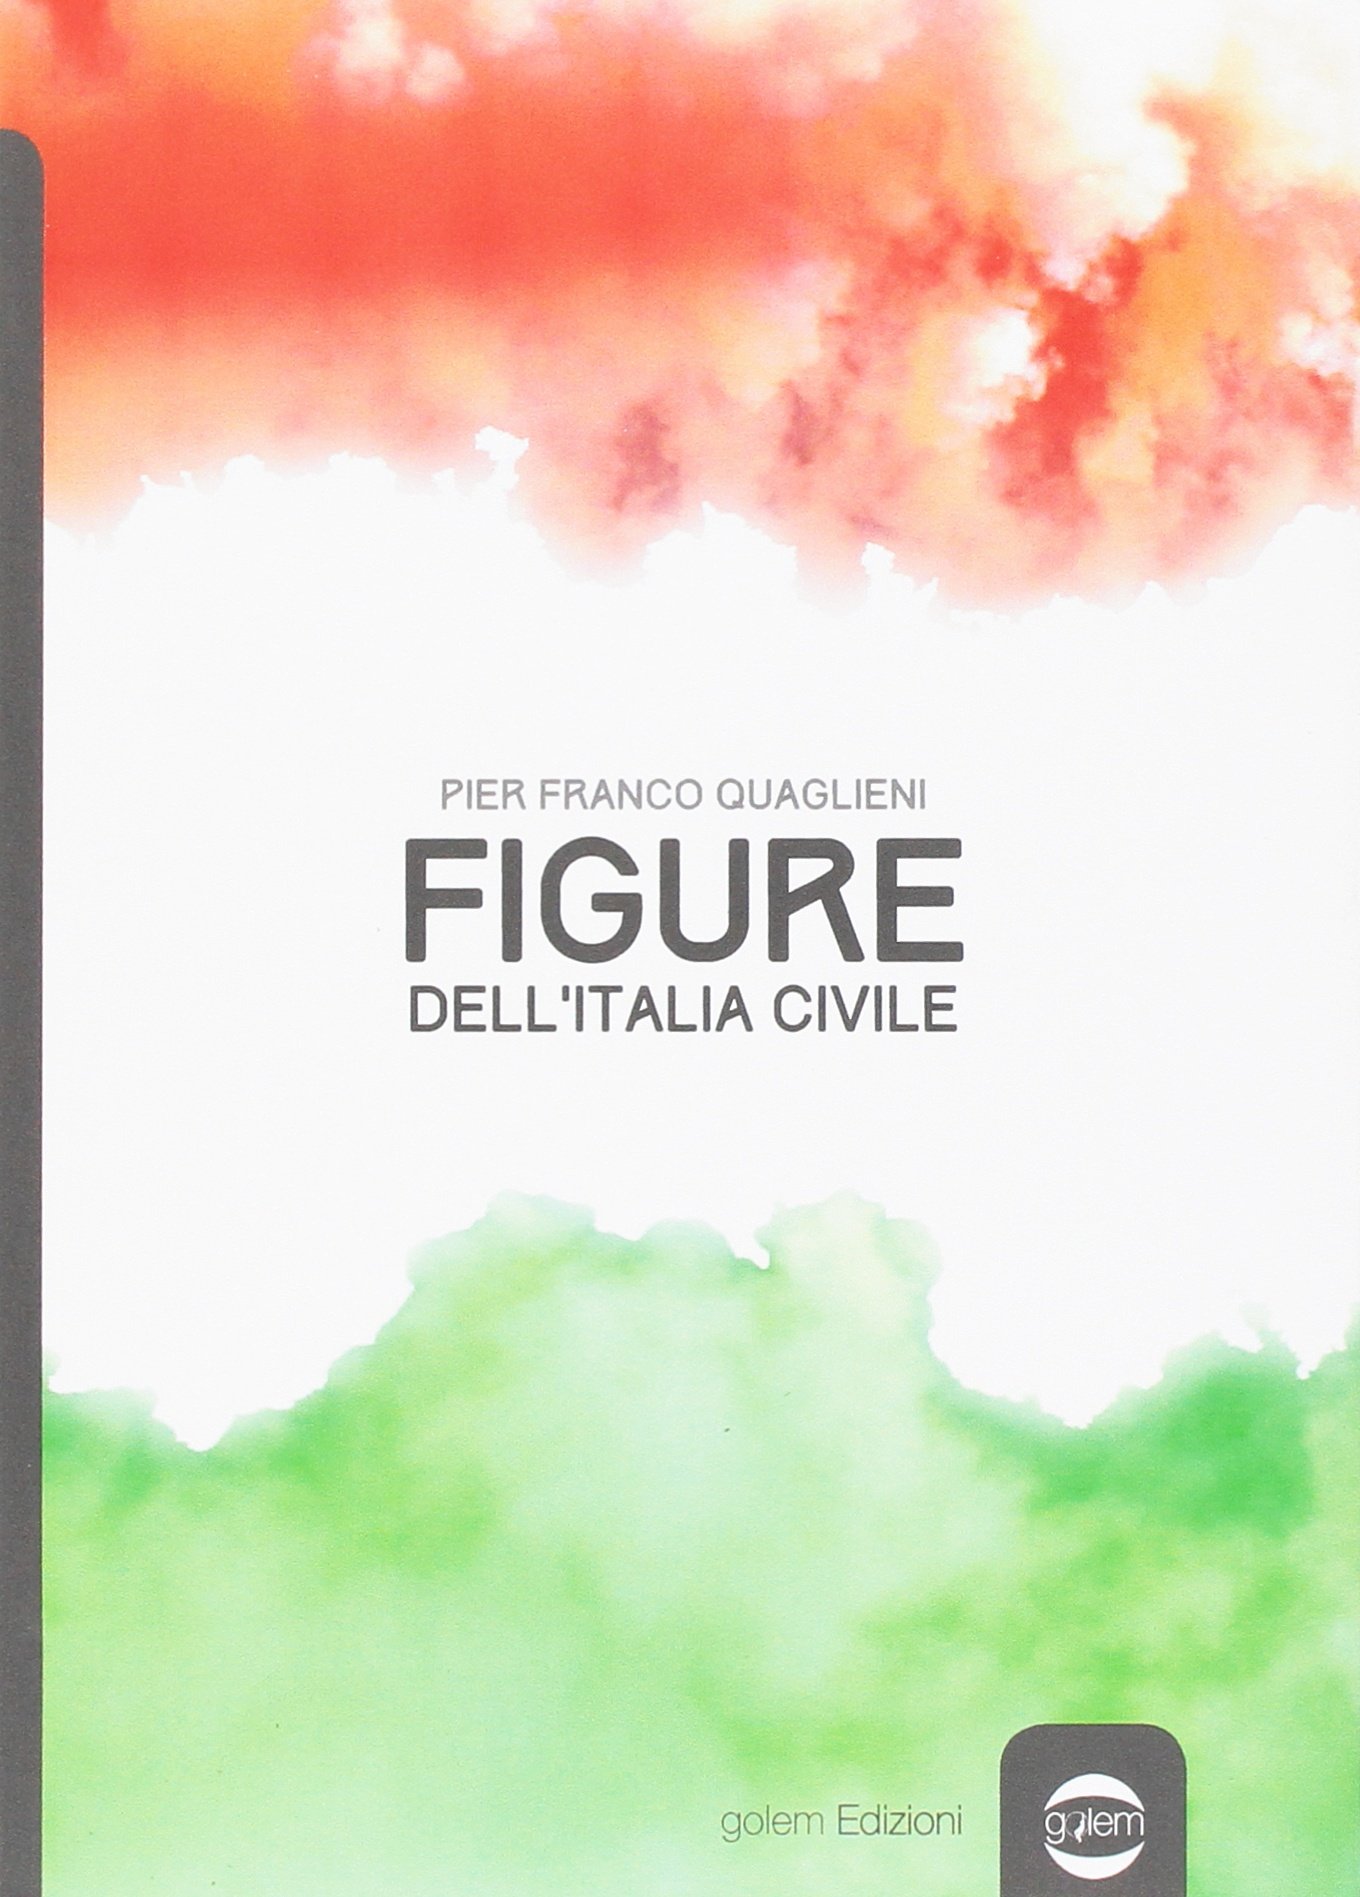 A Palazzo Ceriana Mayneri: Mercoledì 17 gennaio alle ore 18 presentazione della nuova edizione di "Figure dell'Italia Civile" a cura di Pier Franco Quaglieni